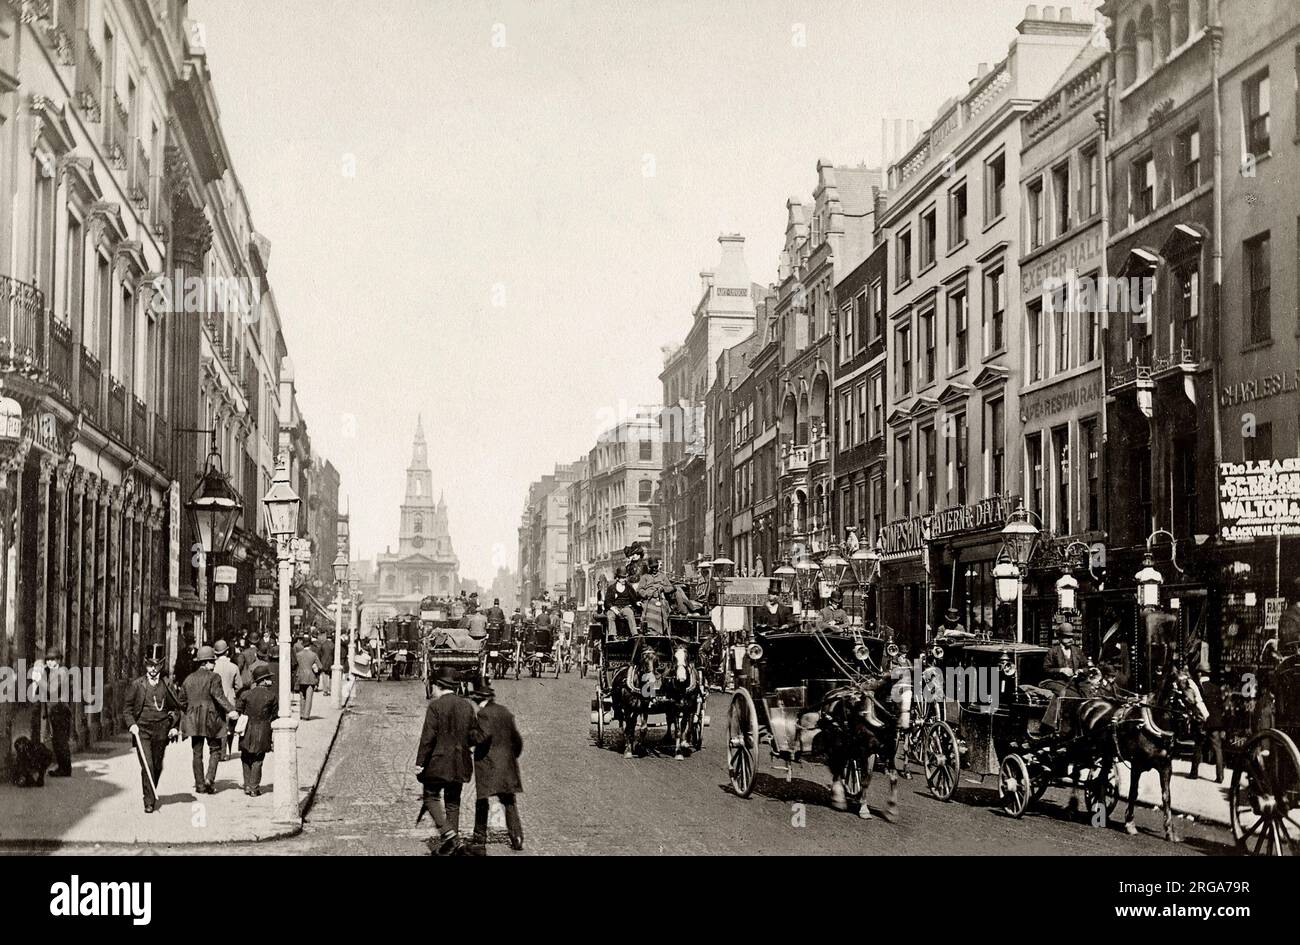 Photographie vintage du 19th siècle : The Strand, Londres Banque D'Images